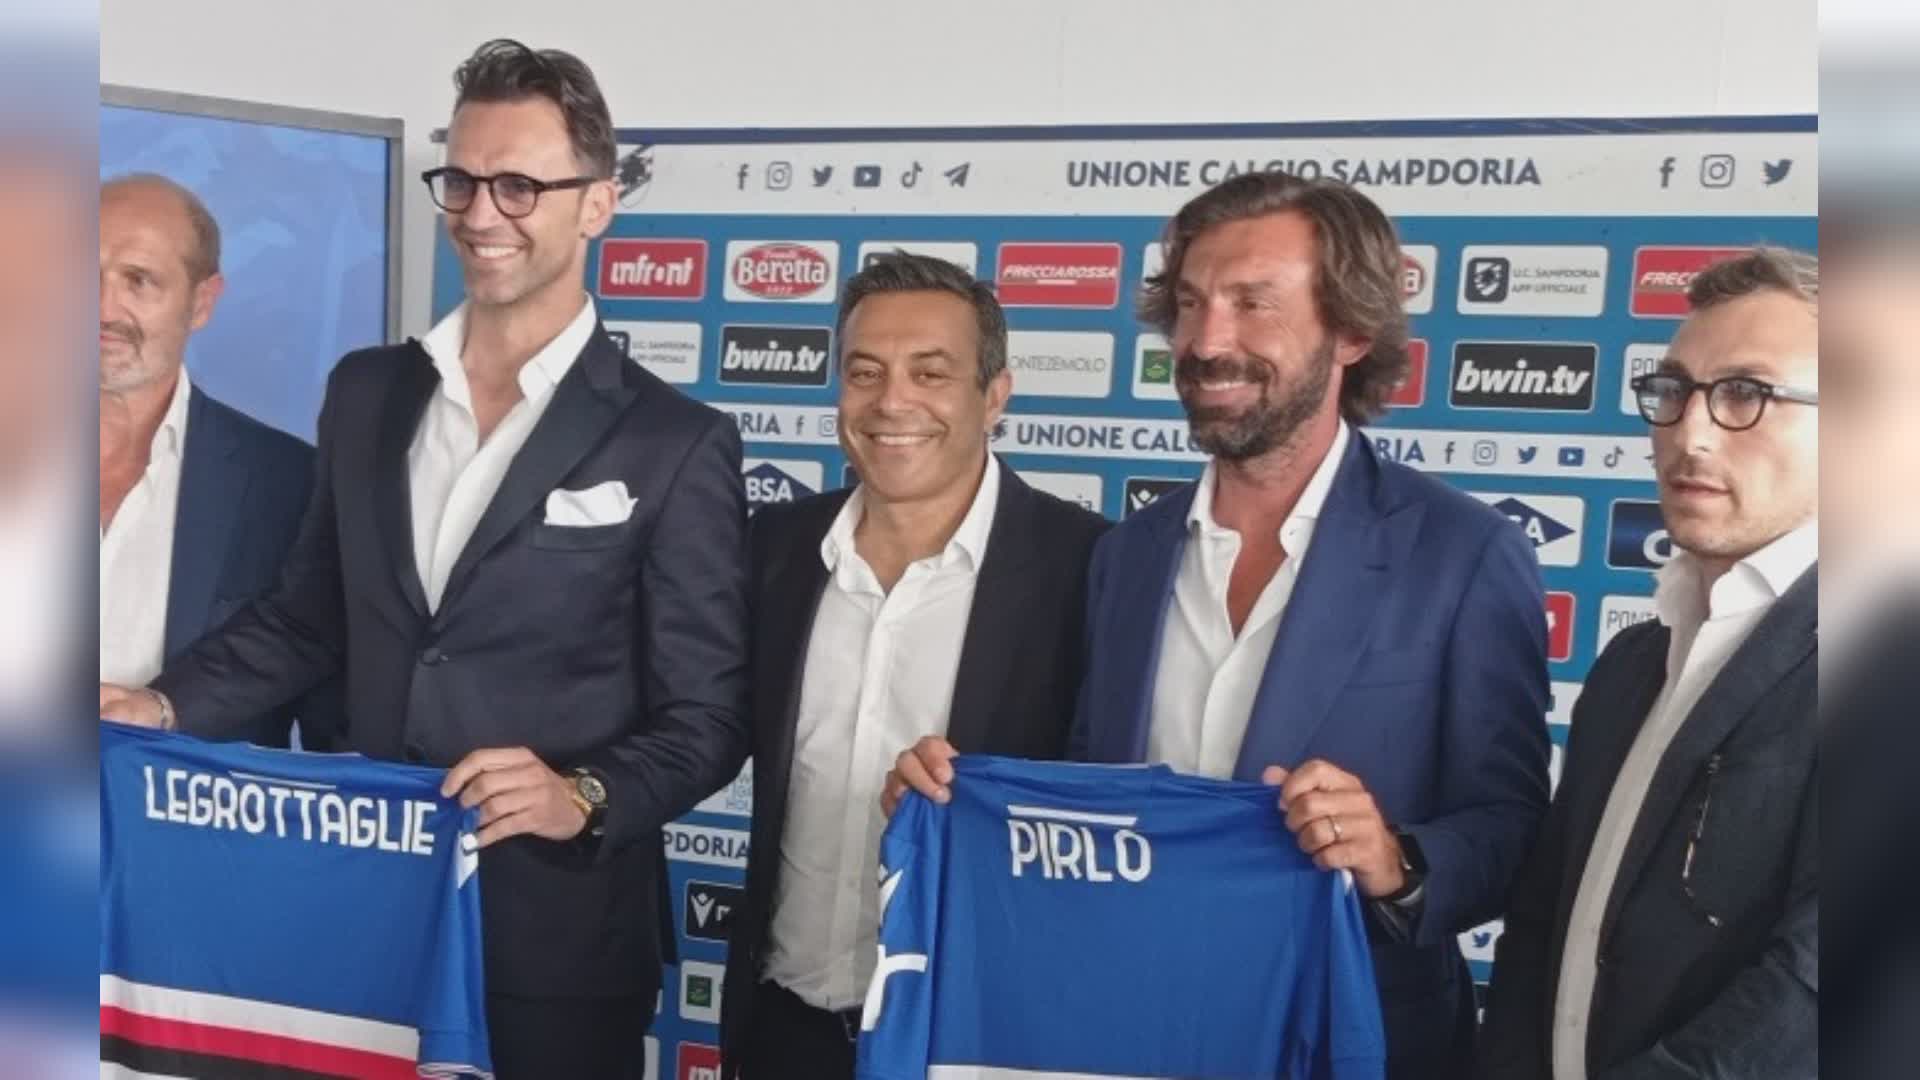 Sampdoria, Legrottaglie: "Fiducia a Pirlo, sosteniamo il suo progetto"